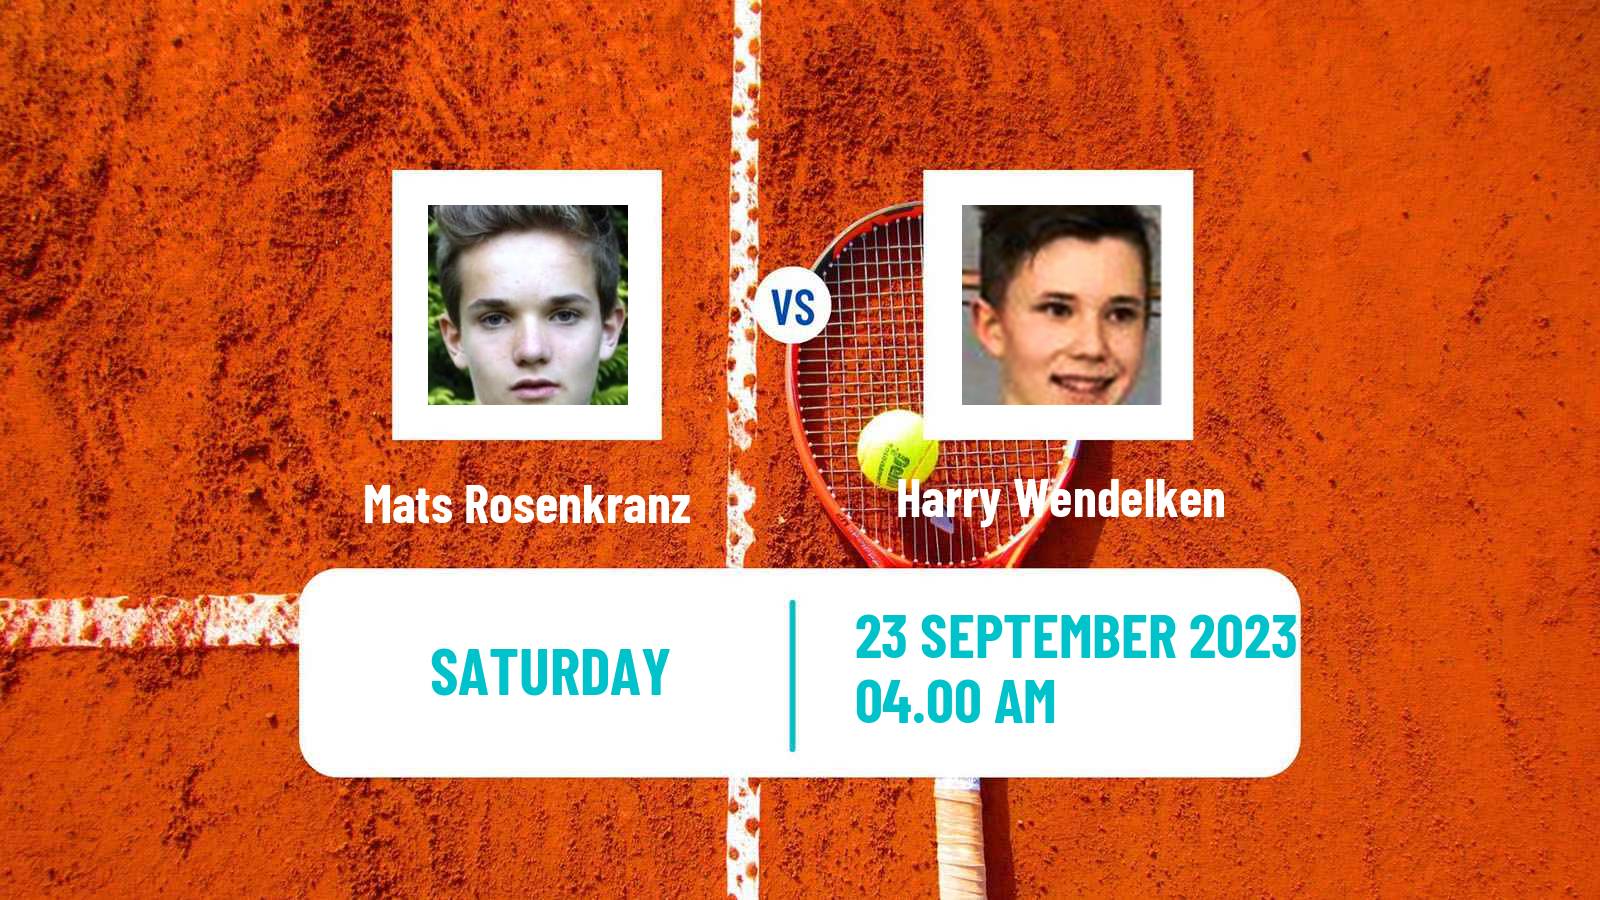 Tennis ITF M15 Danderyd Men Mats Rosenkranz - Harry Wendelken